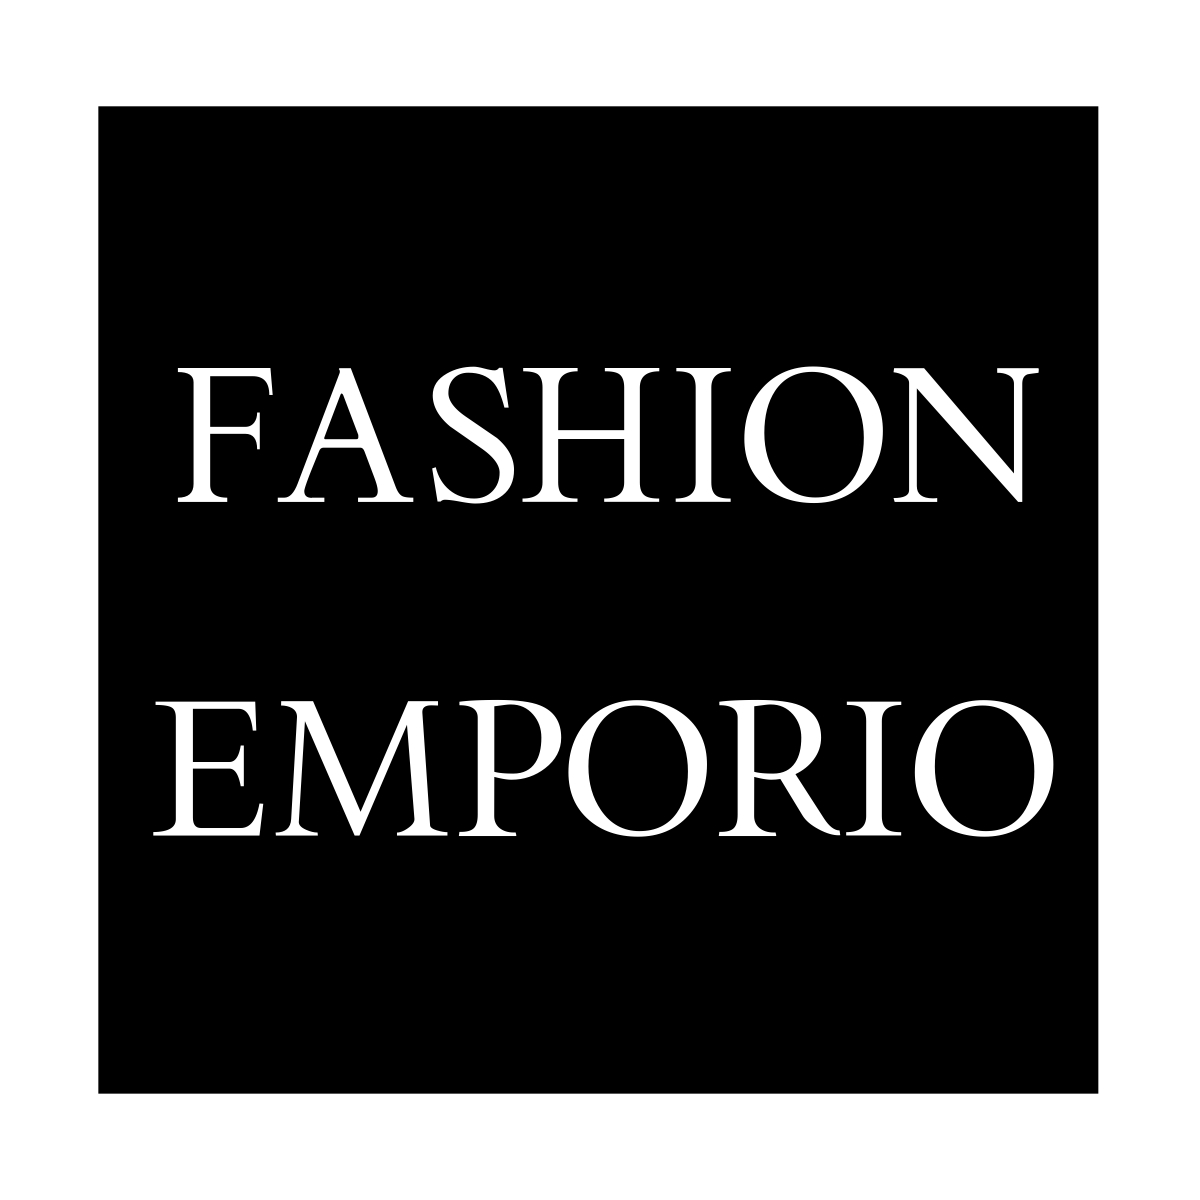 Fashion Emporio